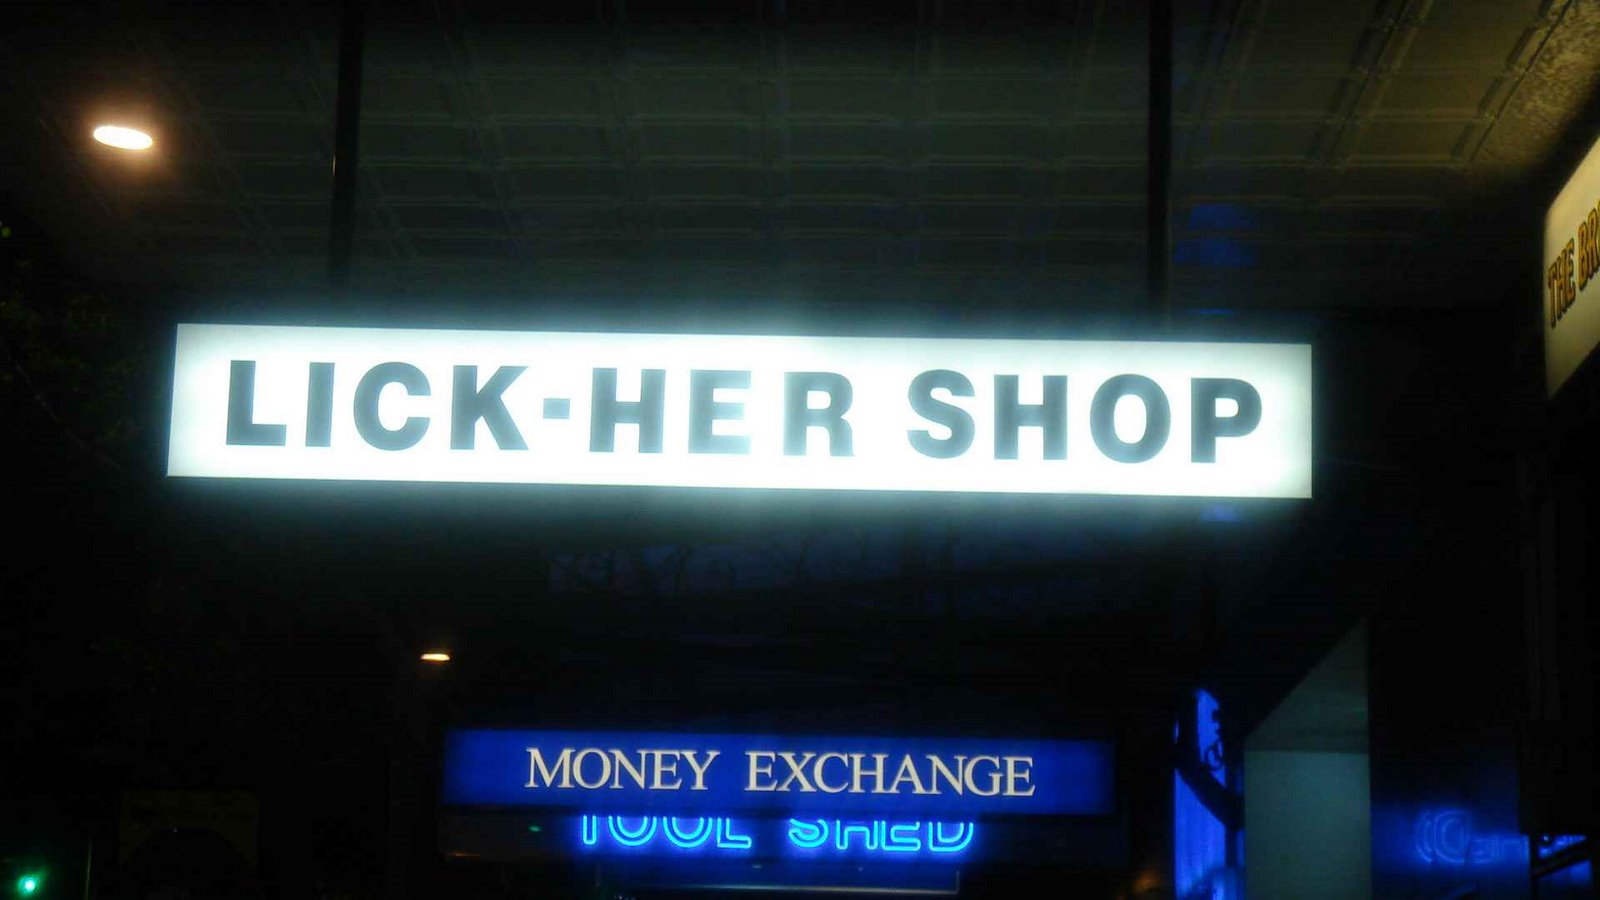 [lick-her-shop.JPG]